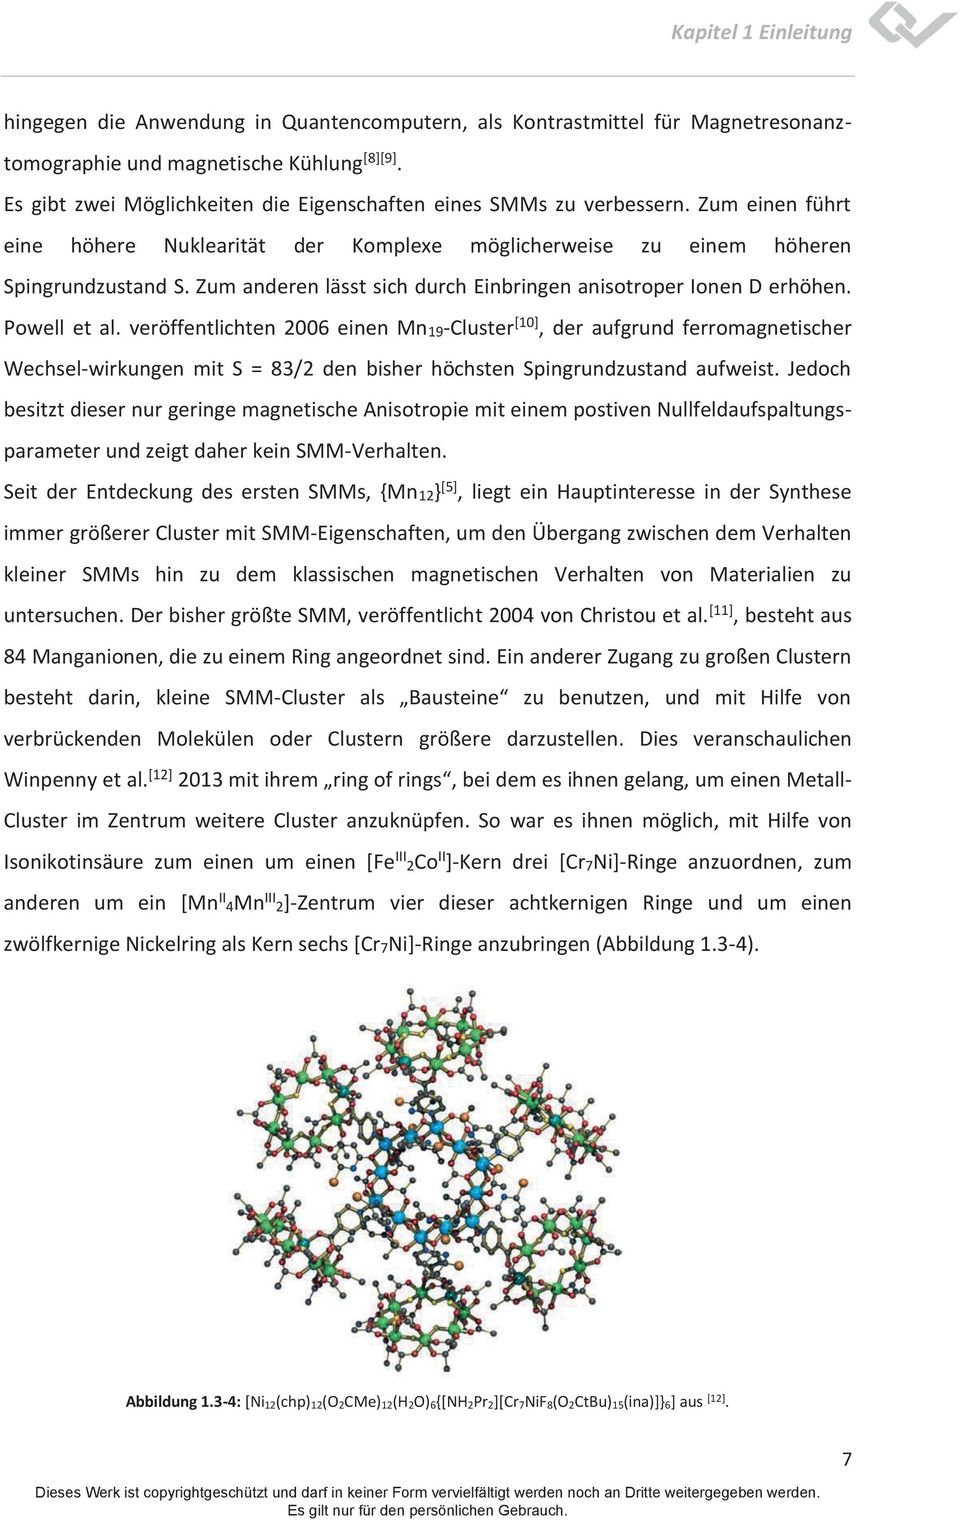 veröffentlichten 2006 einen Mn19-Cluster [10], der aufgrund ferromagnetischer Wechsel-wirkungen mit S = 83/2 den bisher höchsten Spingrundzustand aufweist.